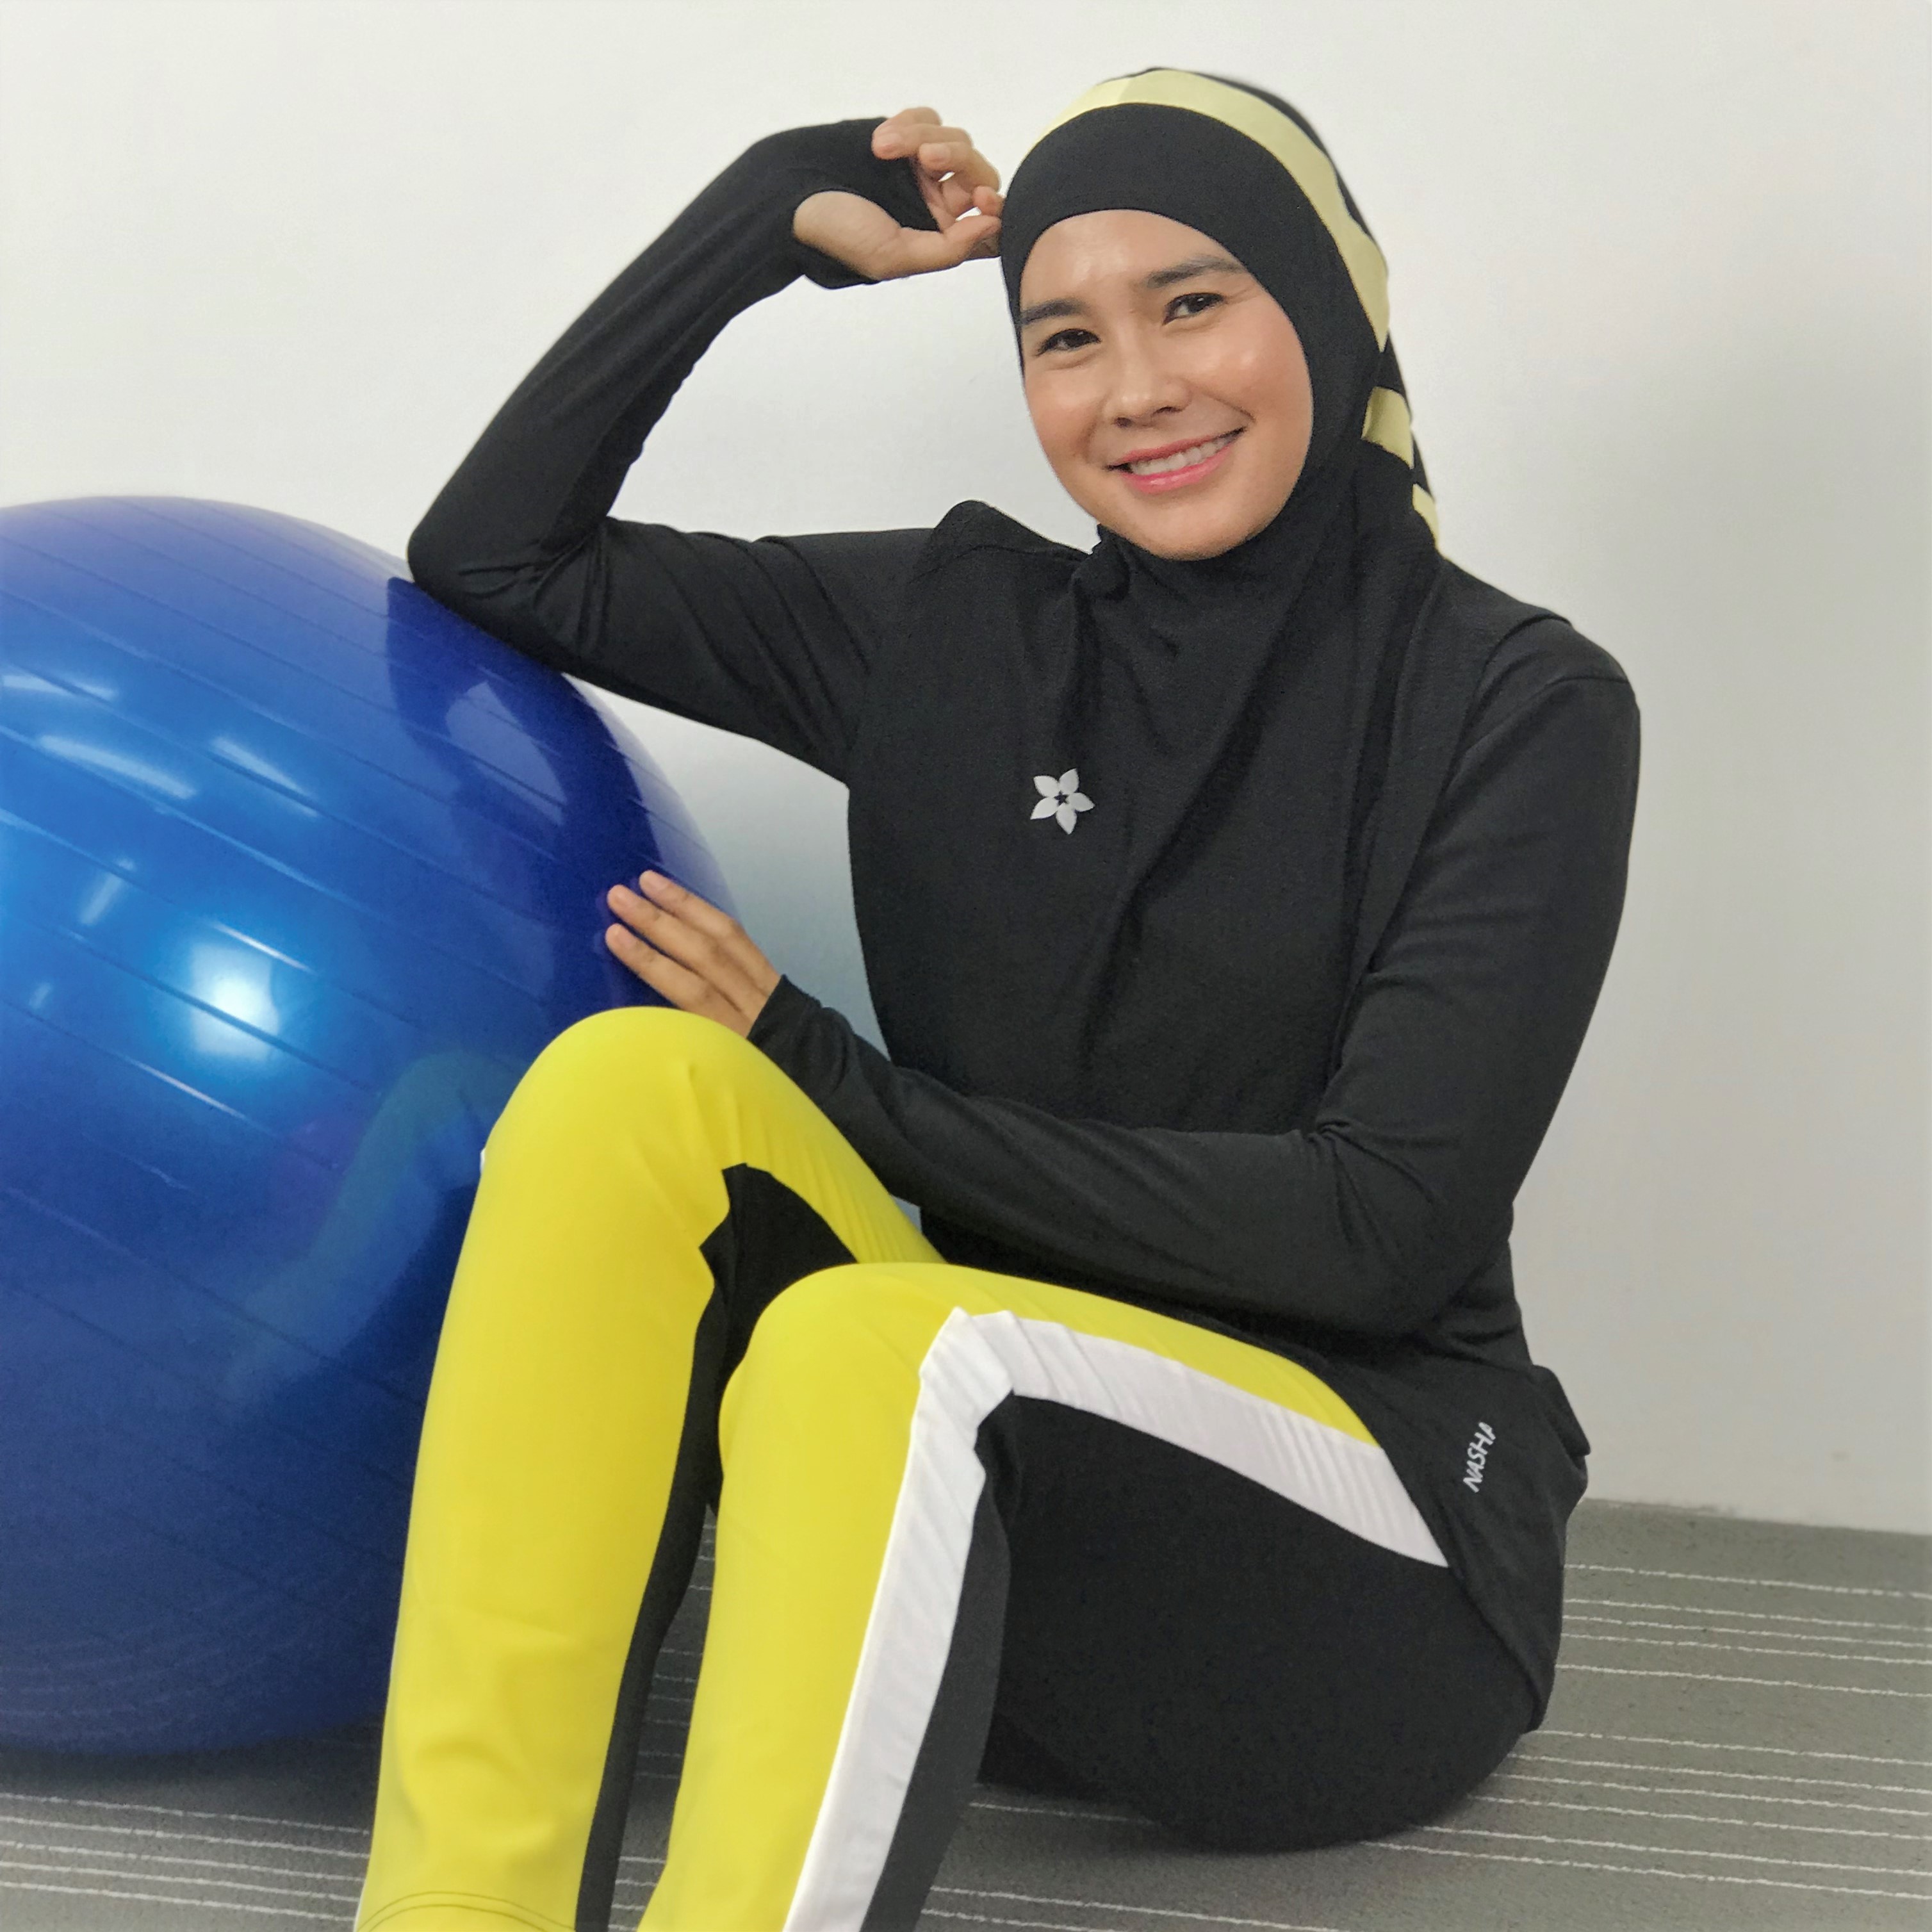 10 gym bag essentials for all hijabis